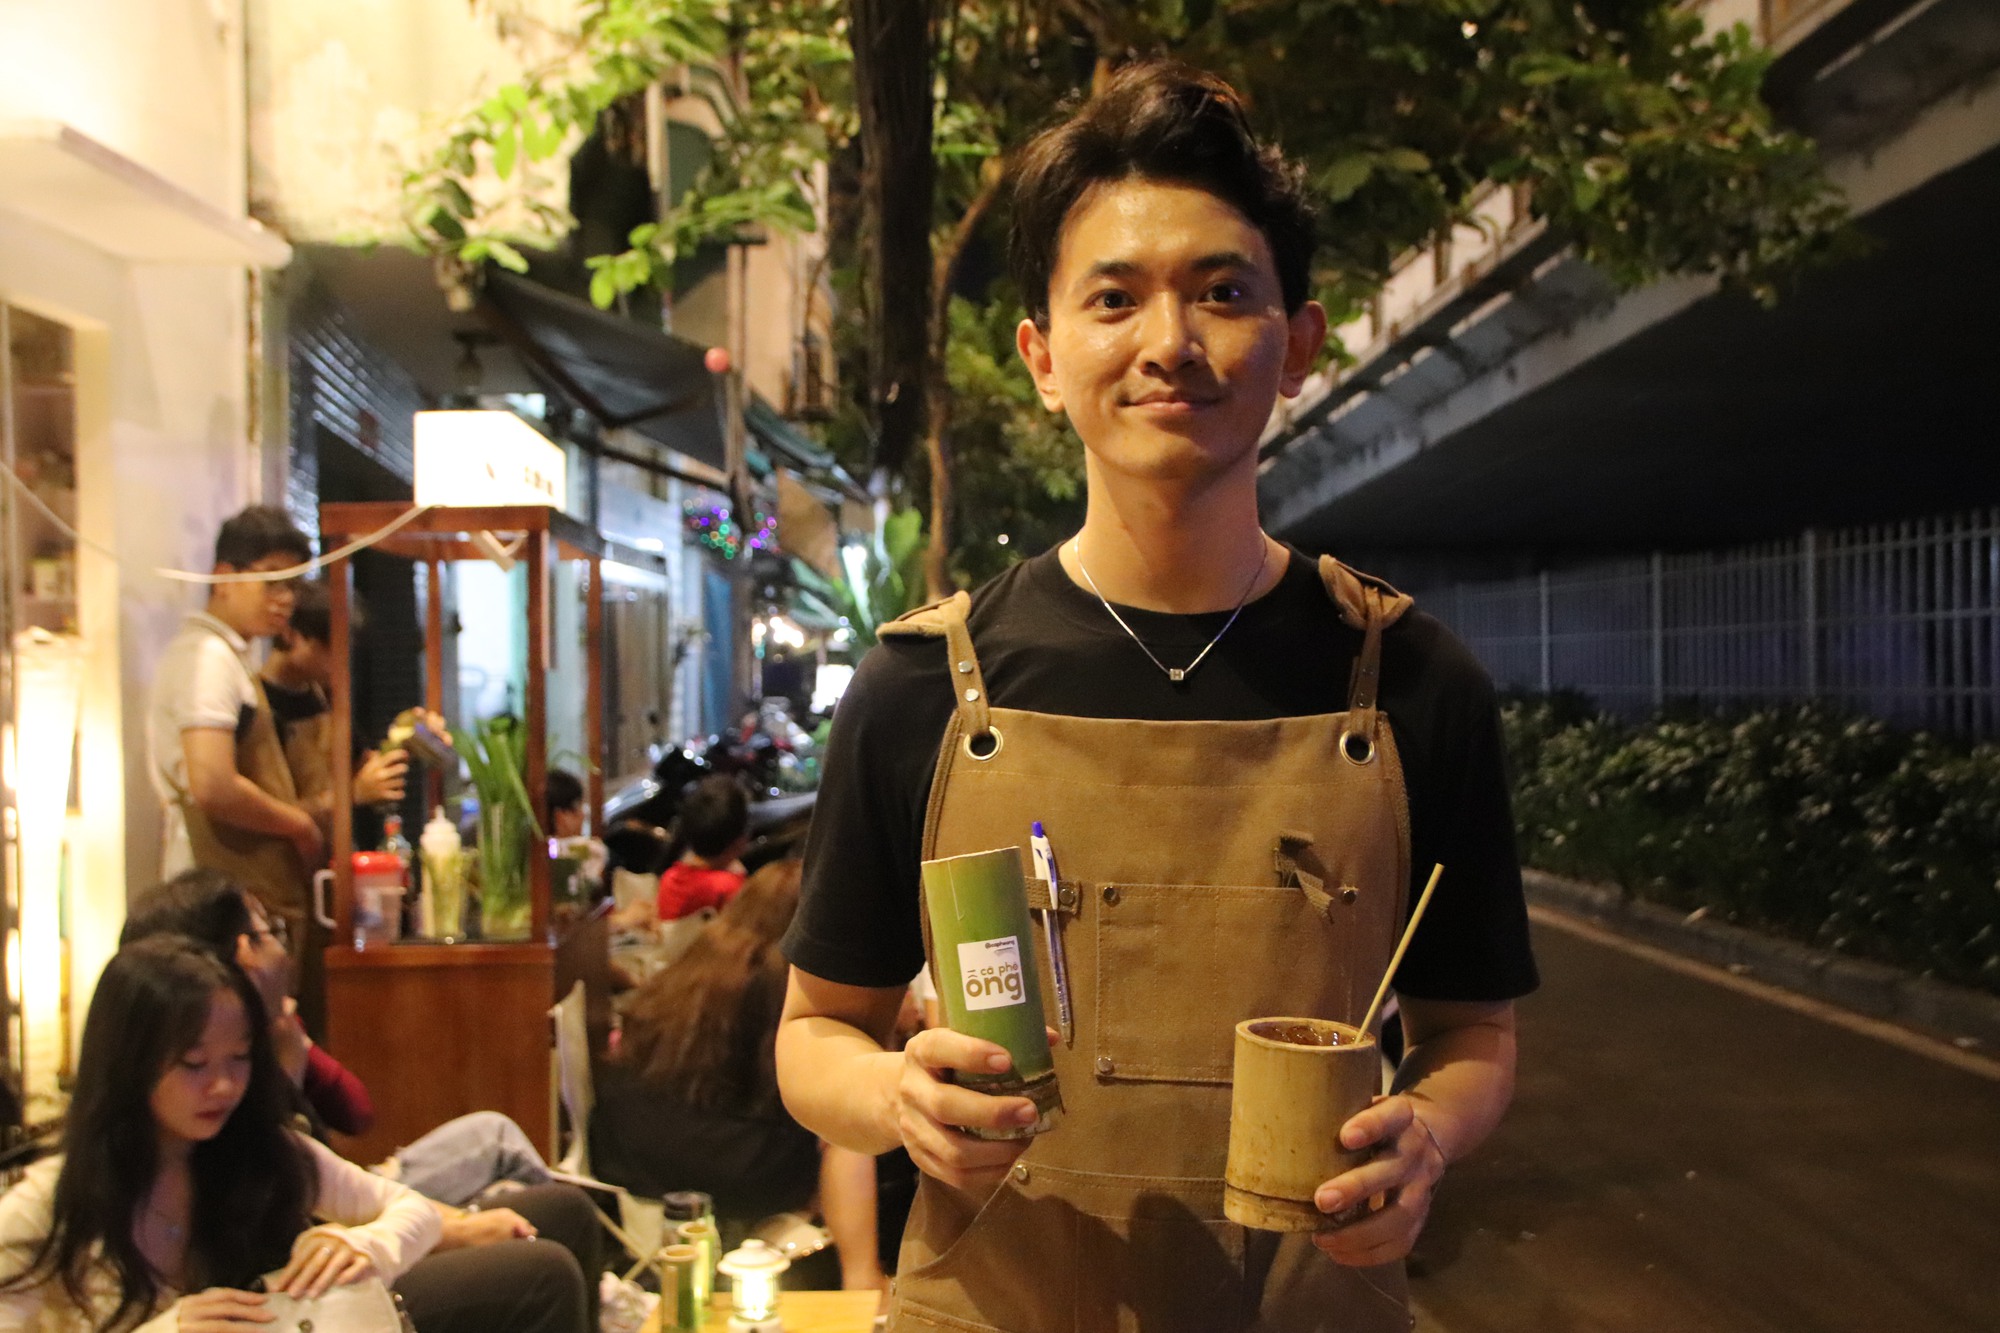 Bán cà phê đựng trong ống tre, mỗi ngày ông chủ GenZ ở Sài Gòn tất bật pha gần 250 ly  - Ảnh 1.